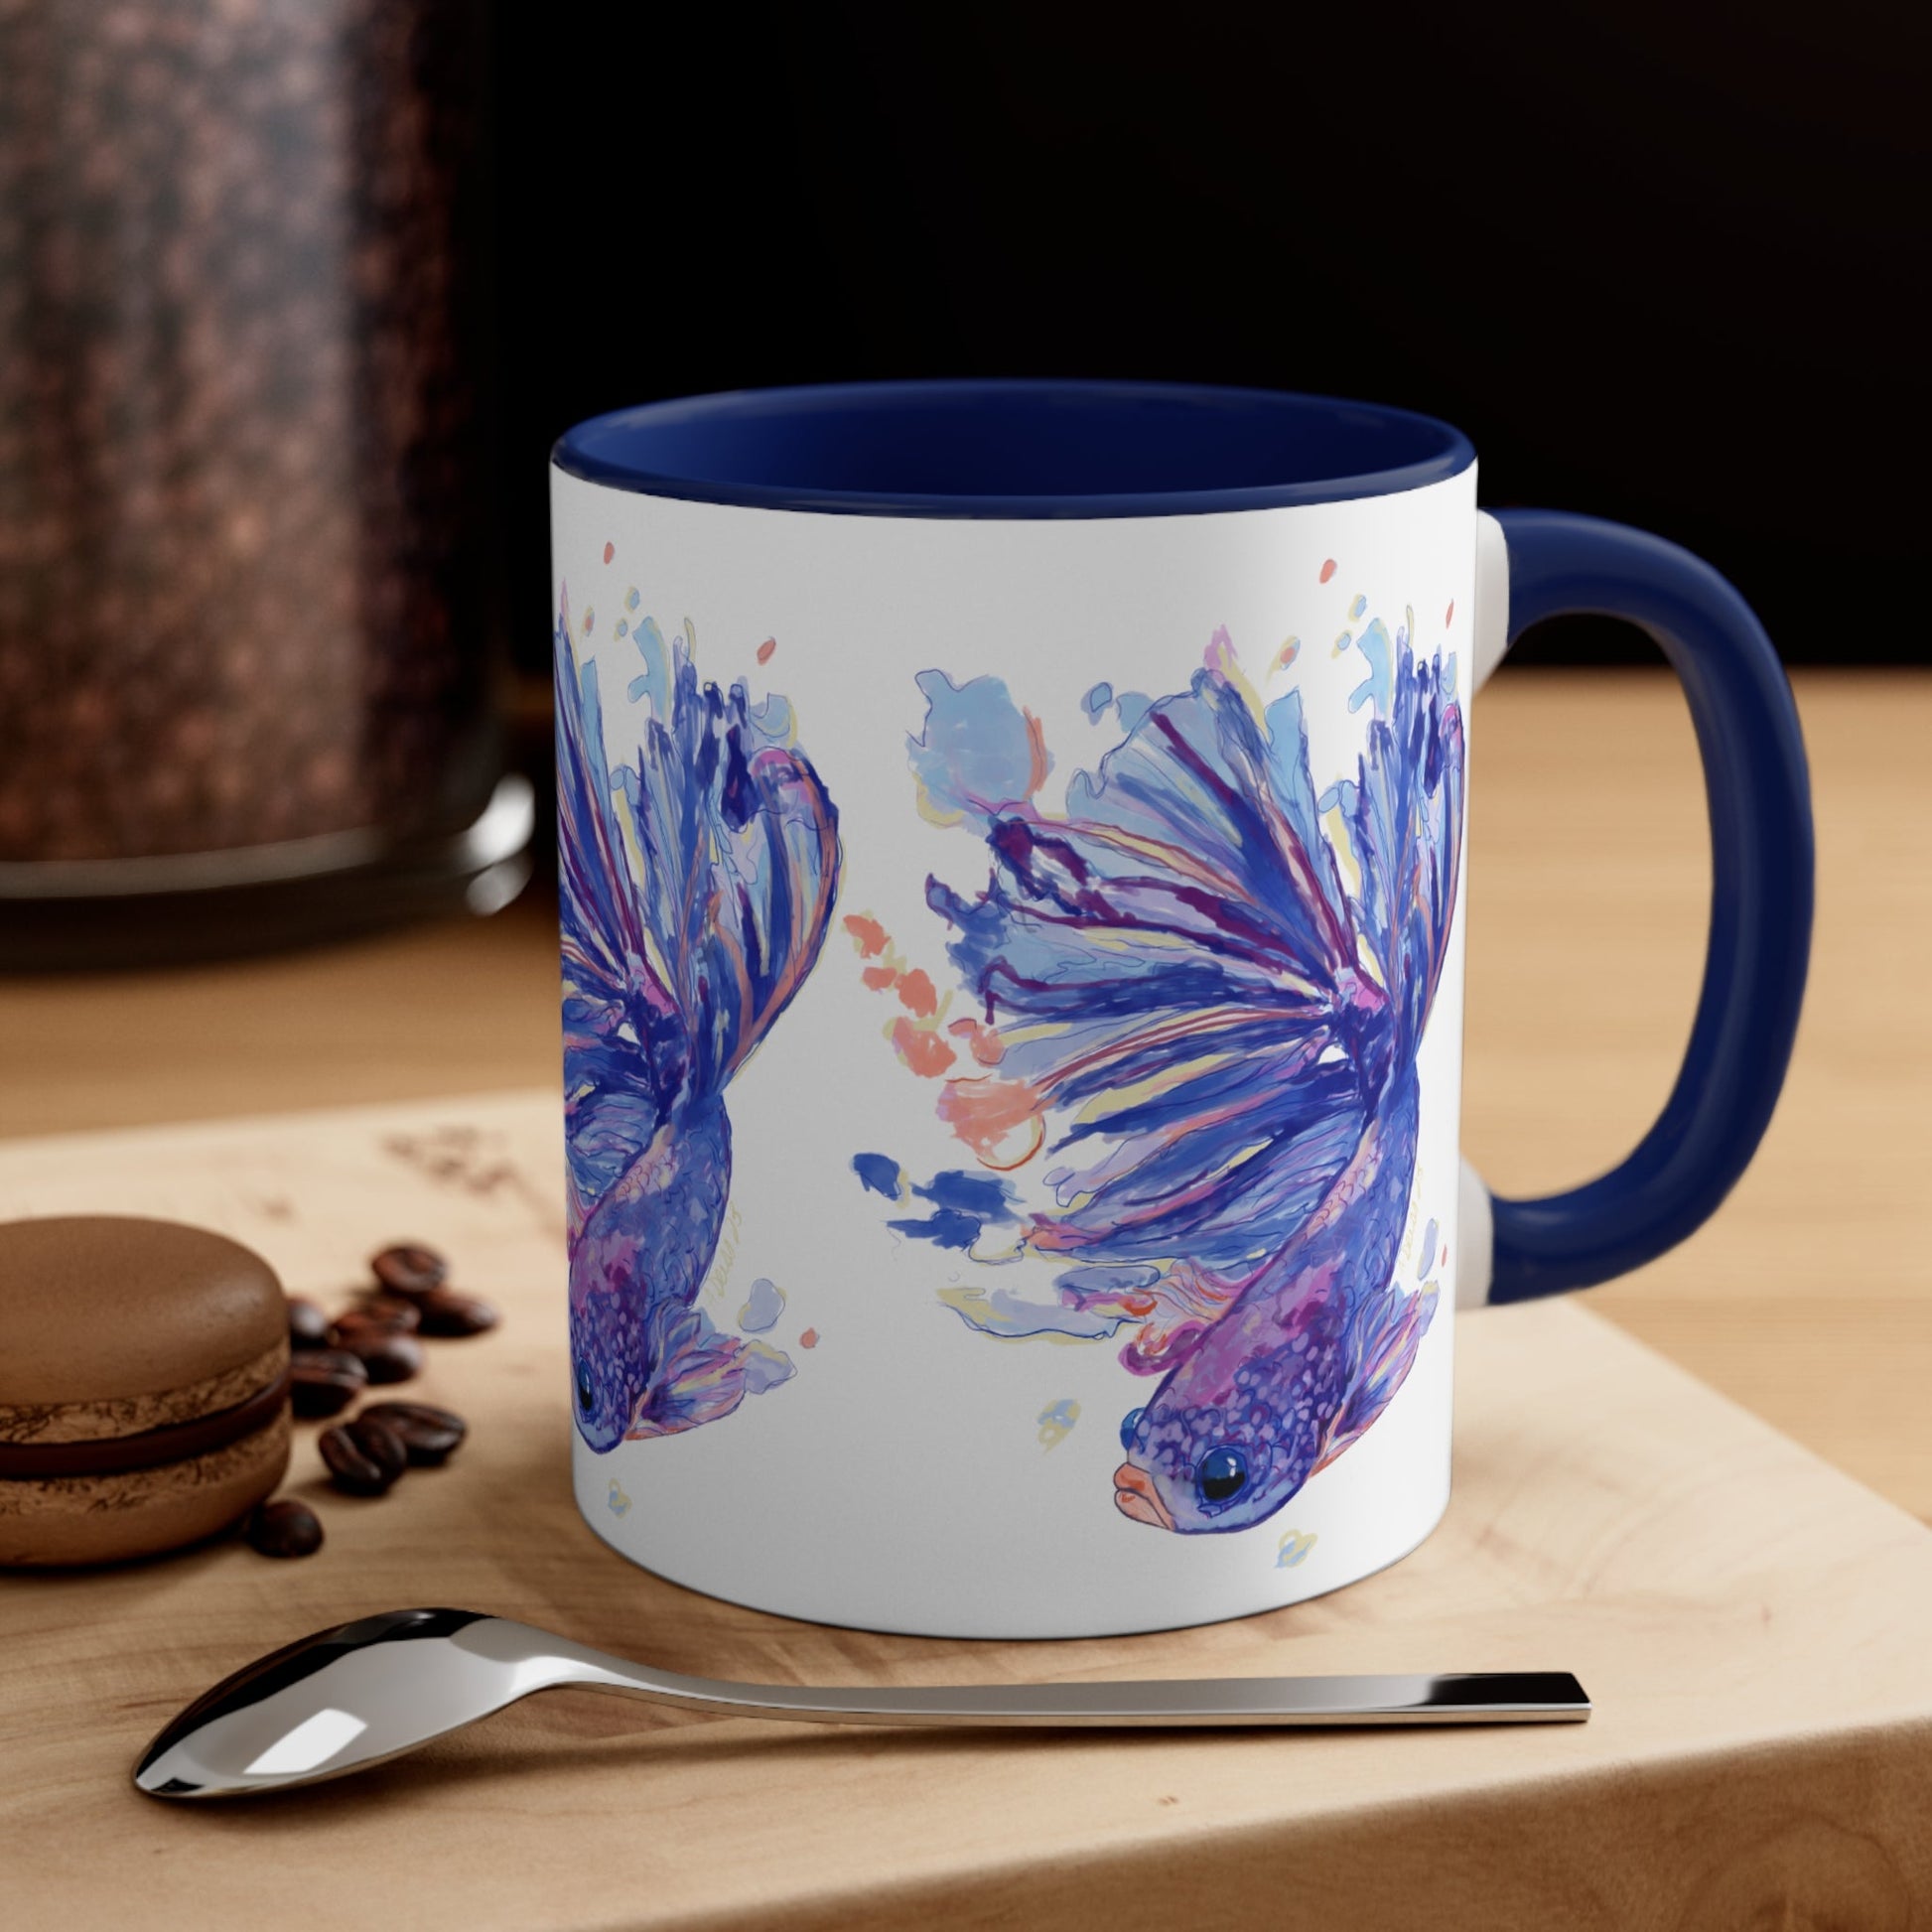 Watercolor Fish Accent Coffee Mug, 11oz - Blue Cava